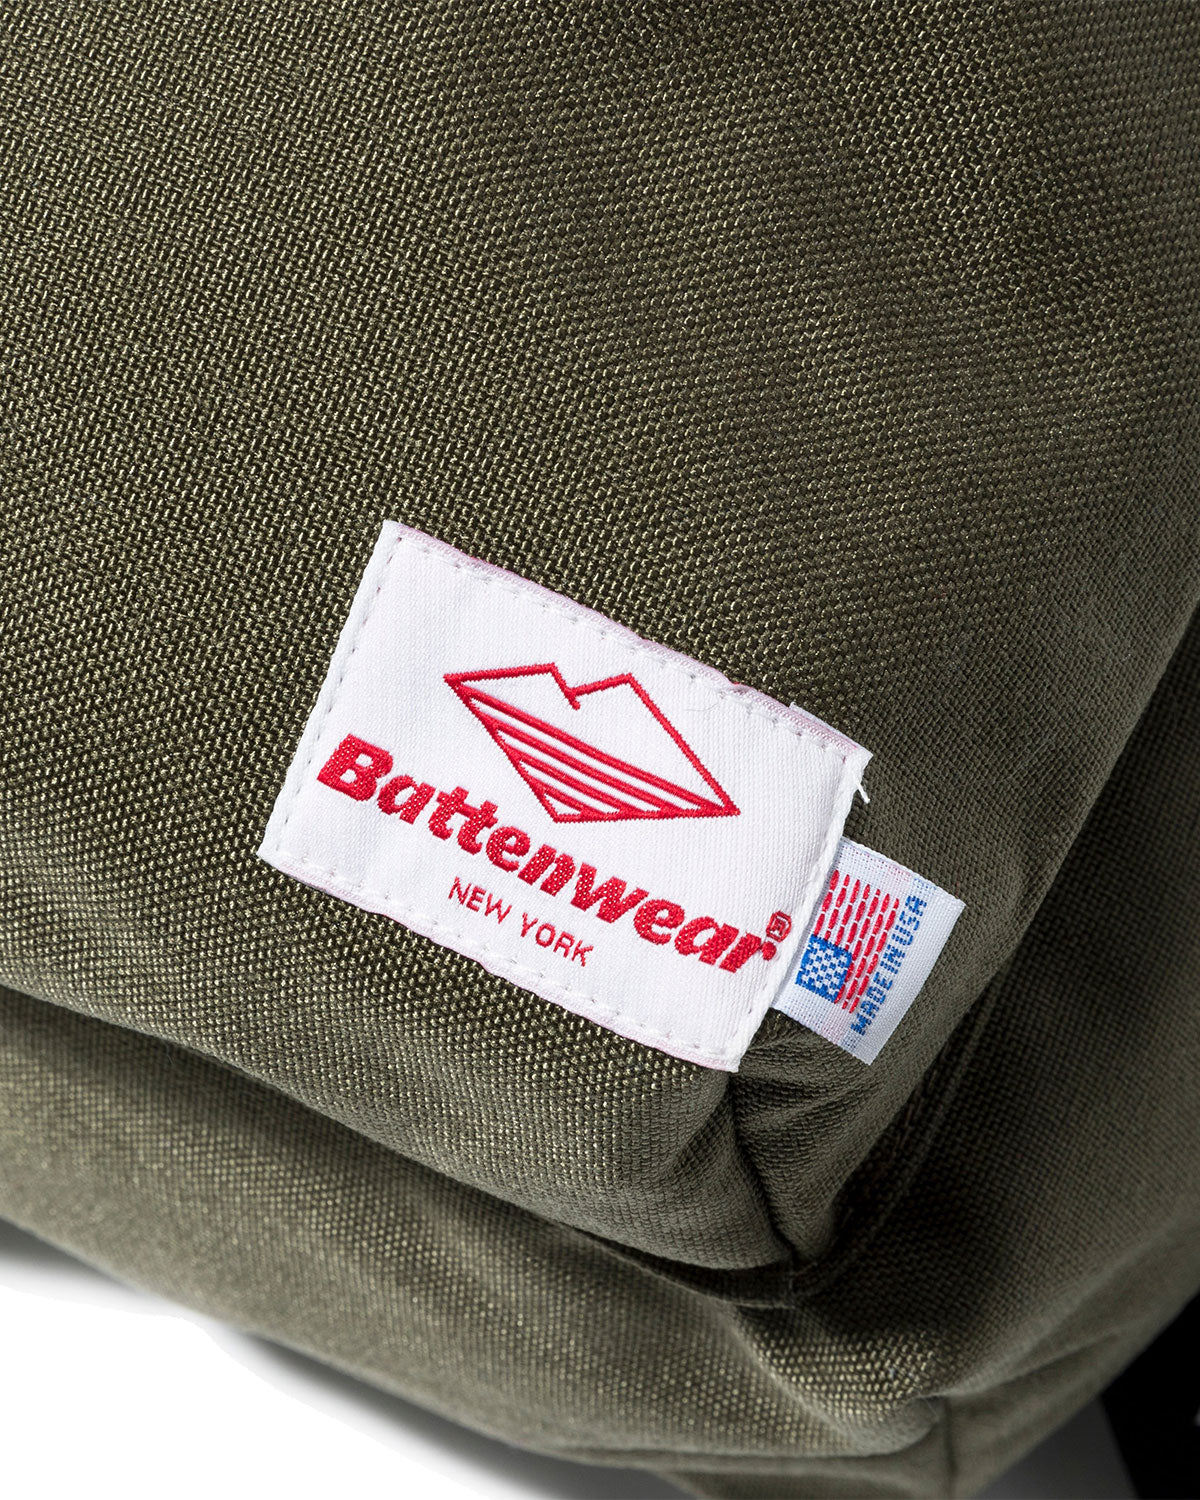 正規品豊富なBattenwear New York Day hiker backpack アメリカ製 バテンウェア リュック リュックサック、デイパック